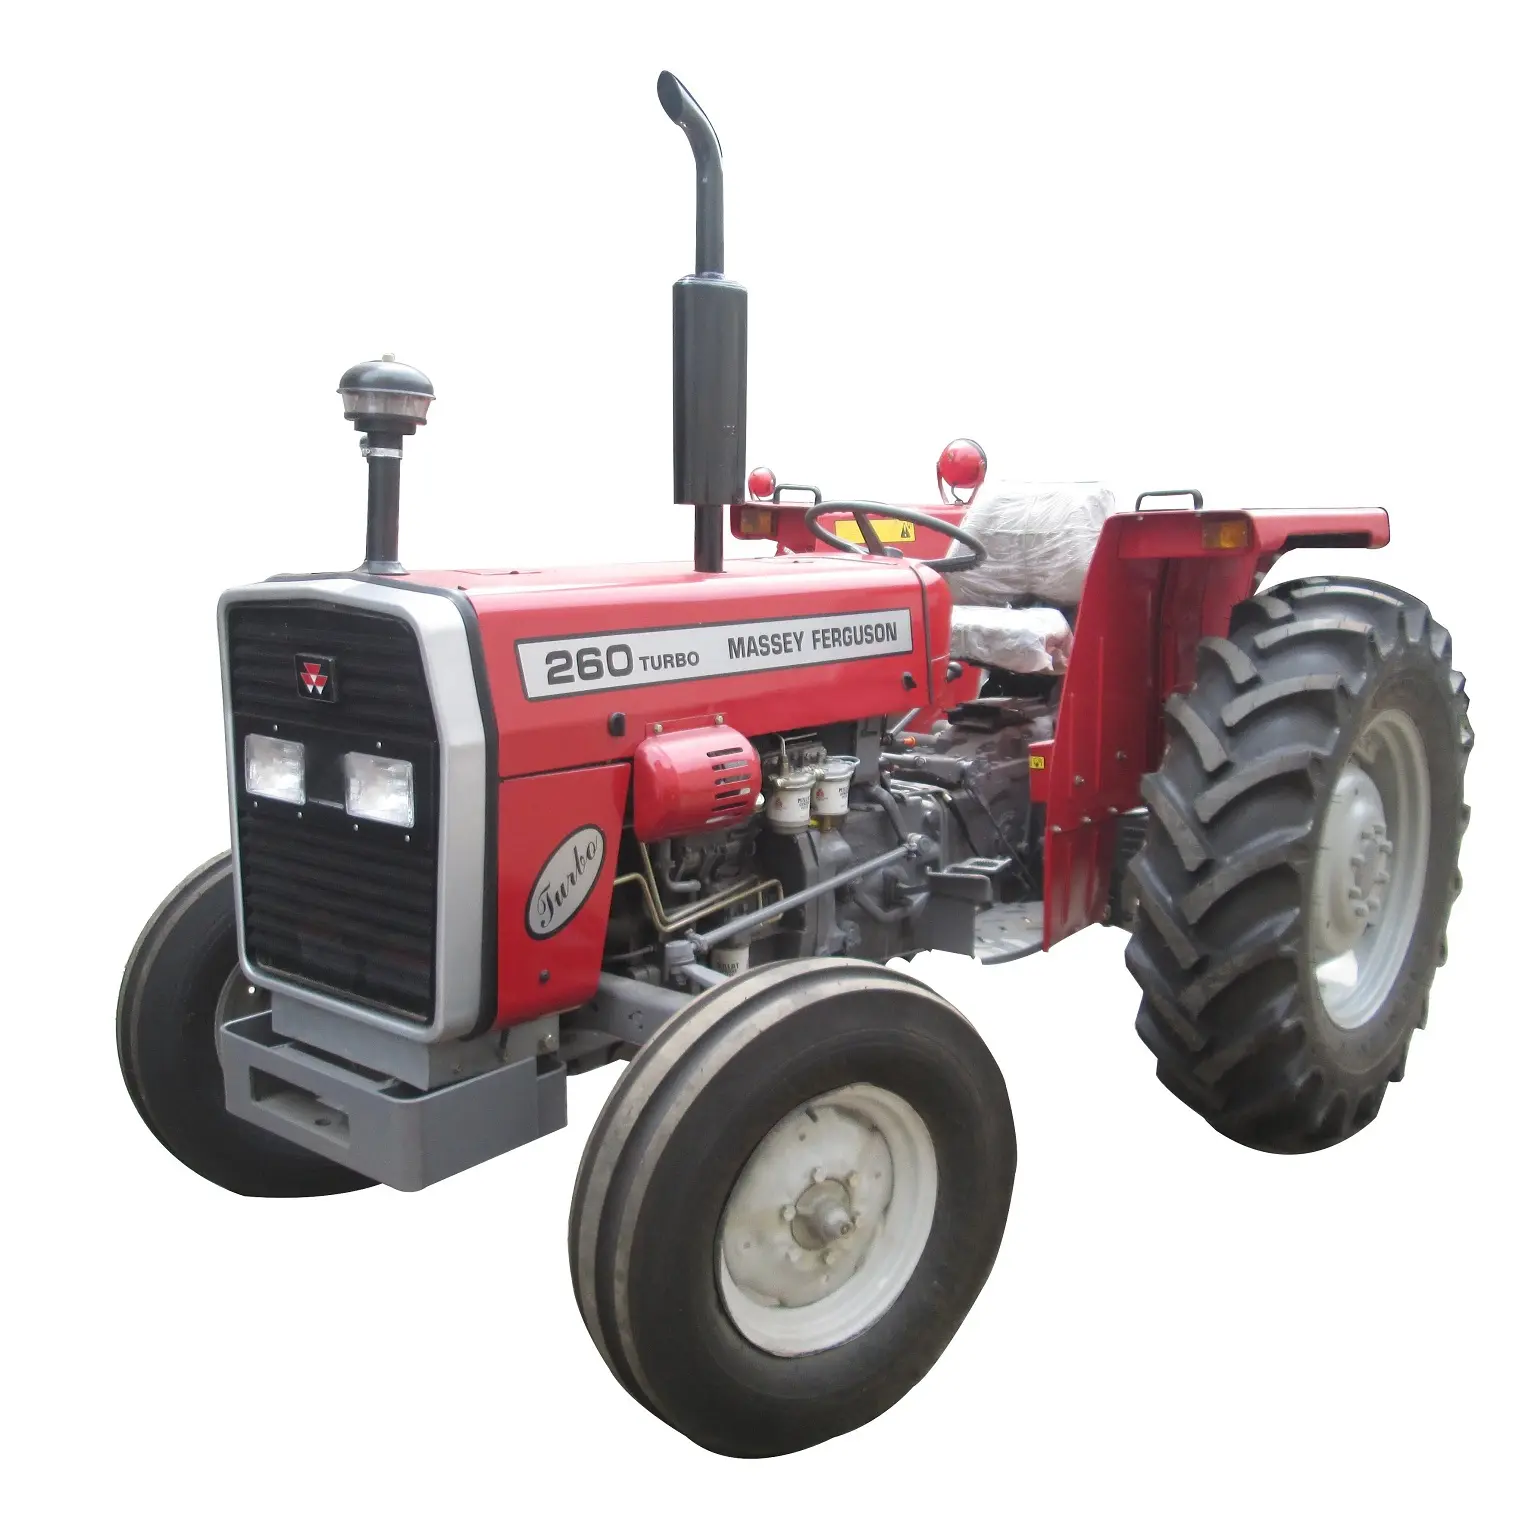 Hochwertige MF Traktor Land maschinen 4WD gebrauchte Massey Ferguson Traktor für die Landwirtschaft Zum Verkauf zum besten Preis